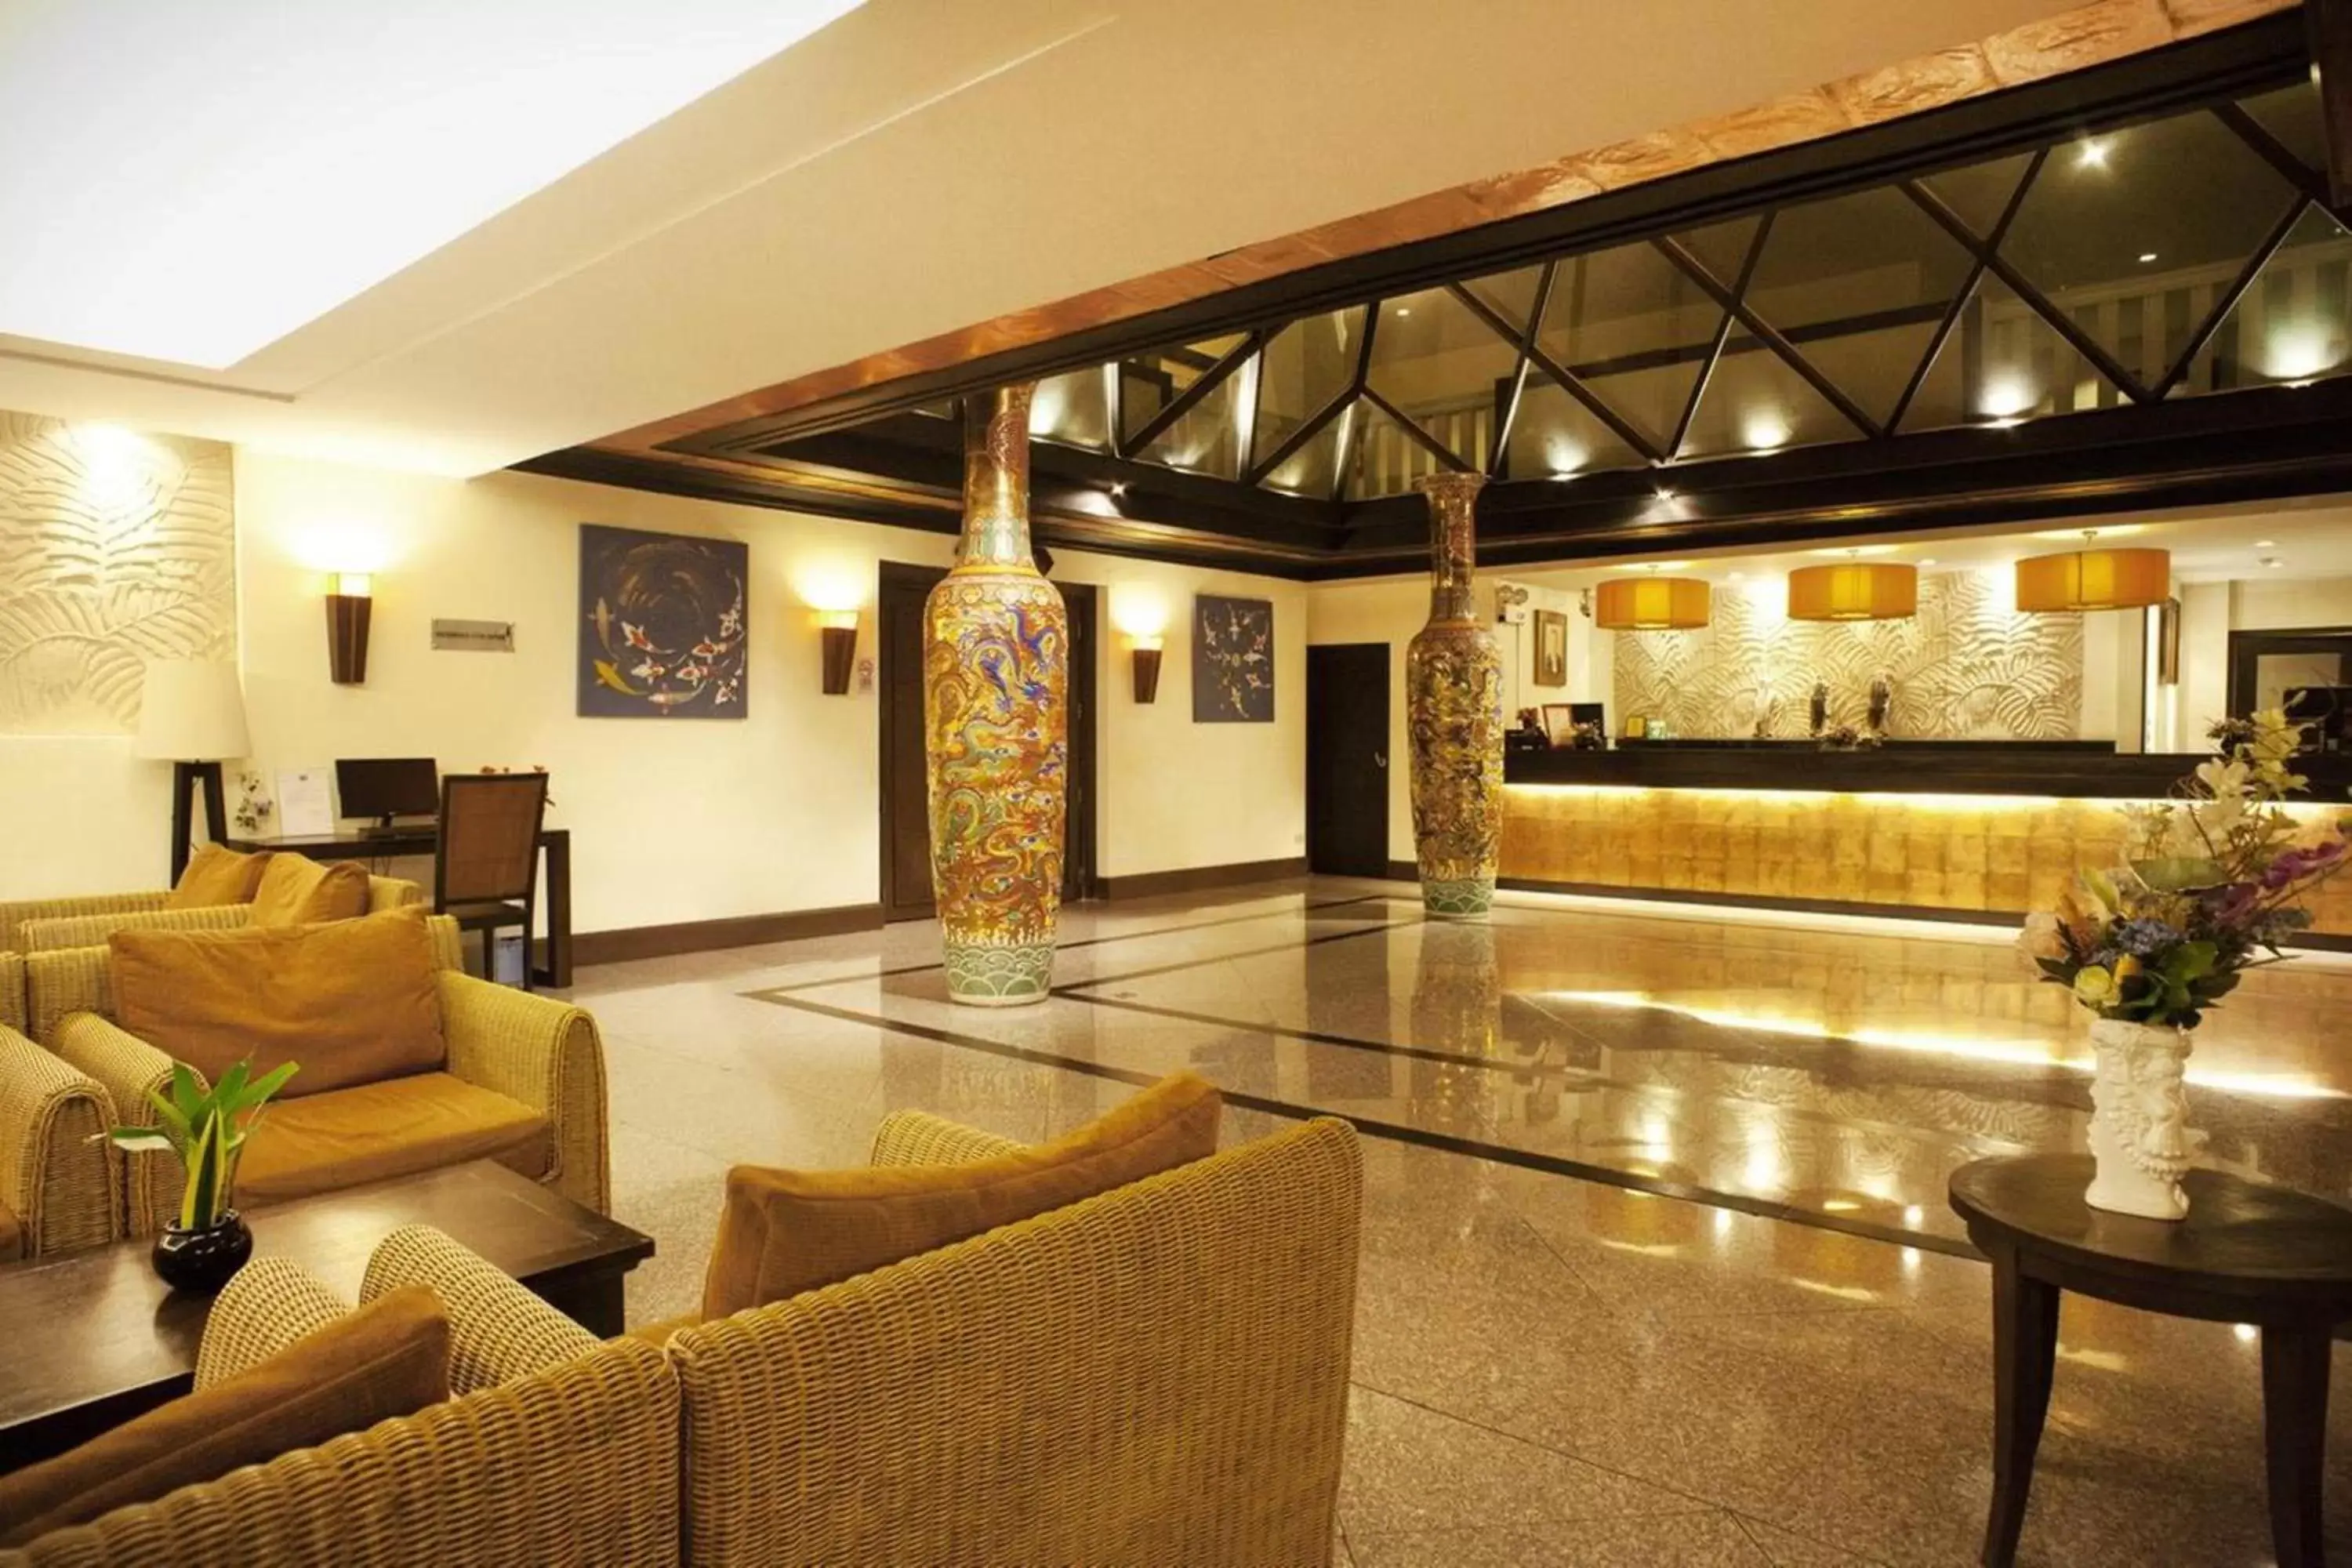 Lobby or reception, Lobby/Reception in Royal Peninsula Hotel Chiangmai